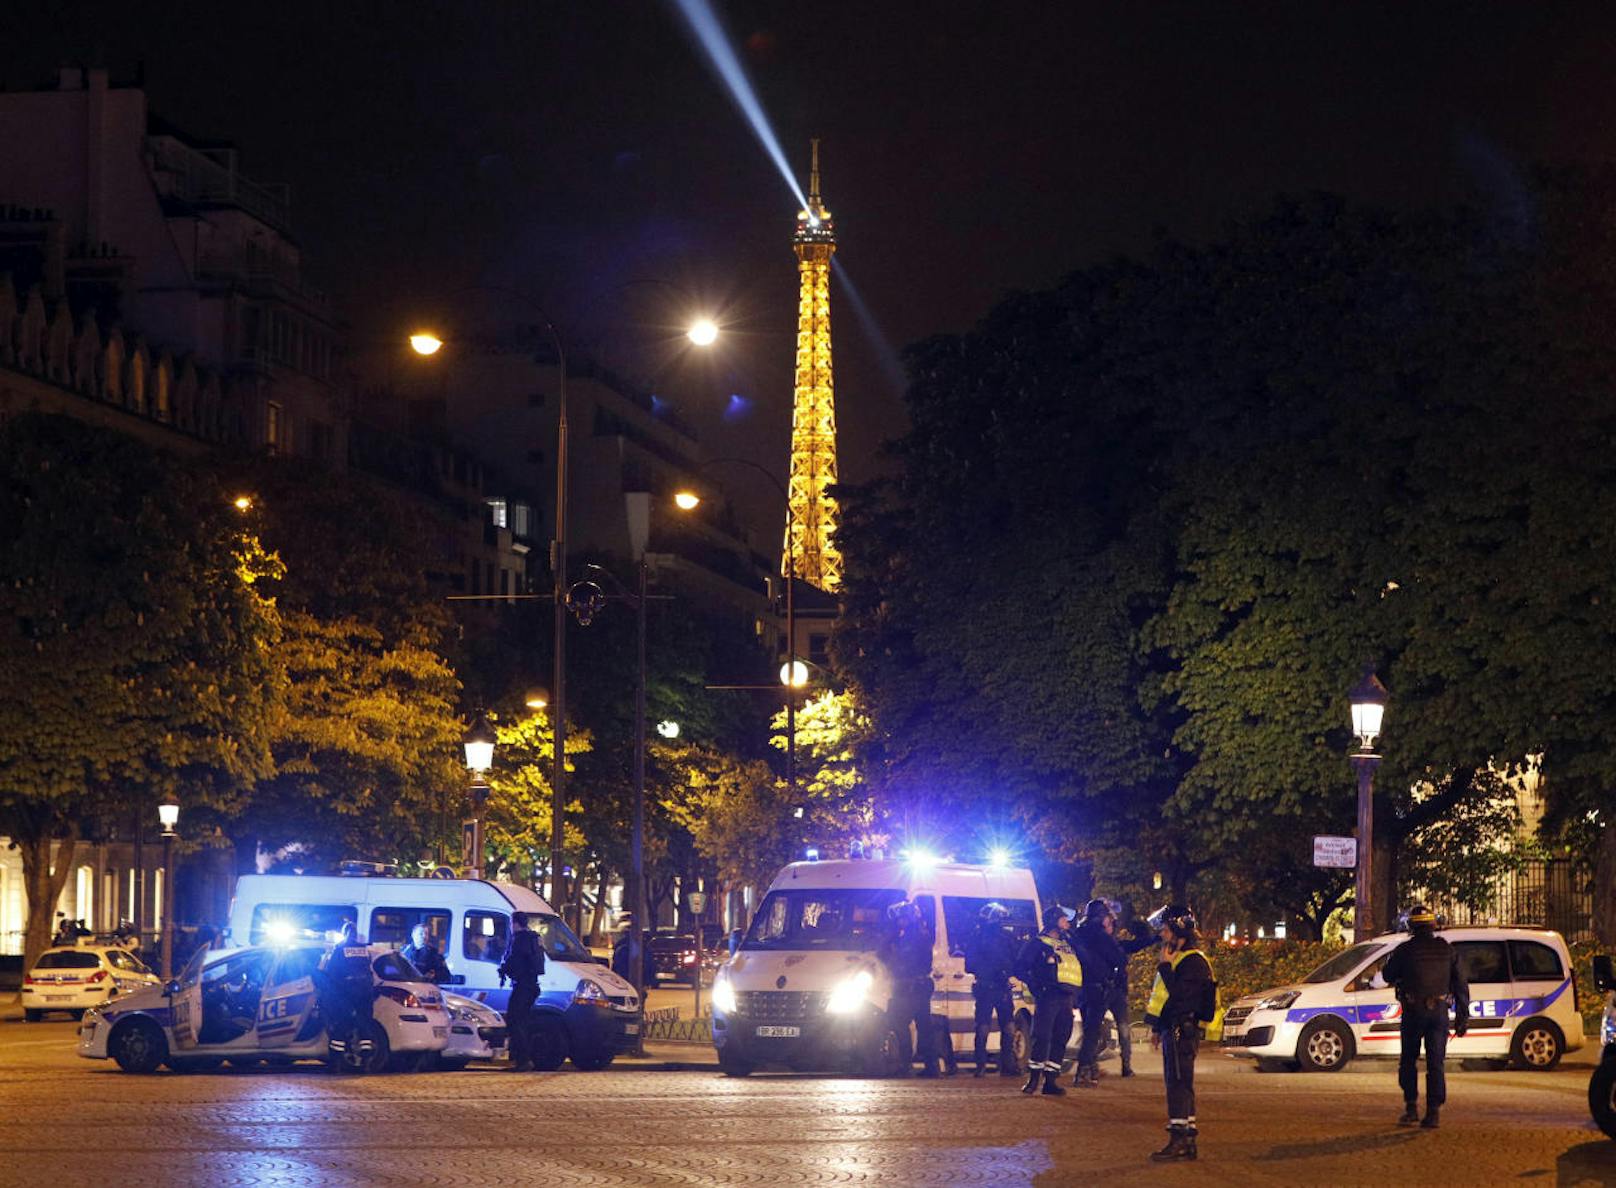 Die Zeitung "Le Figaro" berichtete, es habe einen zweiten Angreifer gegeben, der womöglich auf der Flucht sei. Das war aber noch nicht offiziell bestätigt.